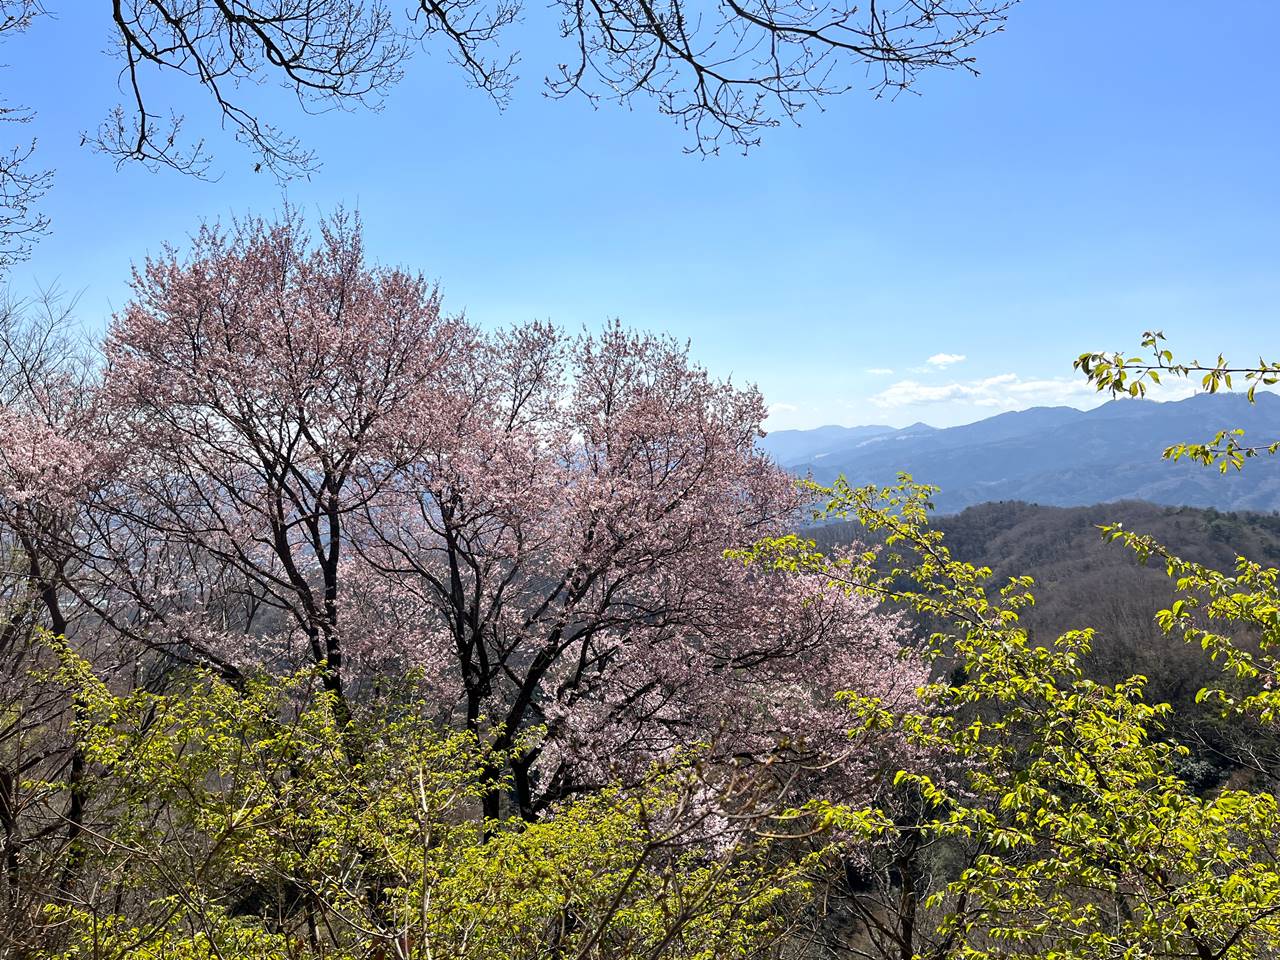 【奥武蔵】鐘撞堂山 桜とカタクリ咲く春の登山